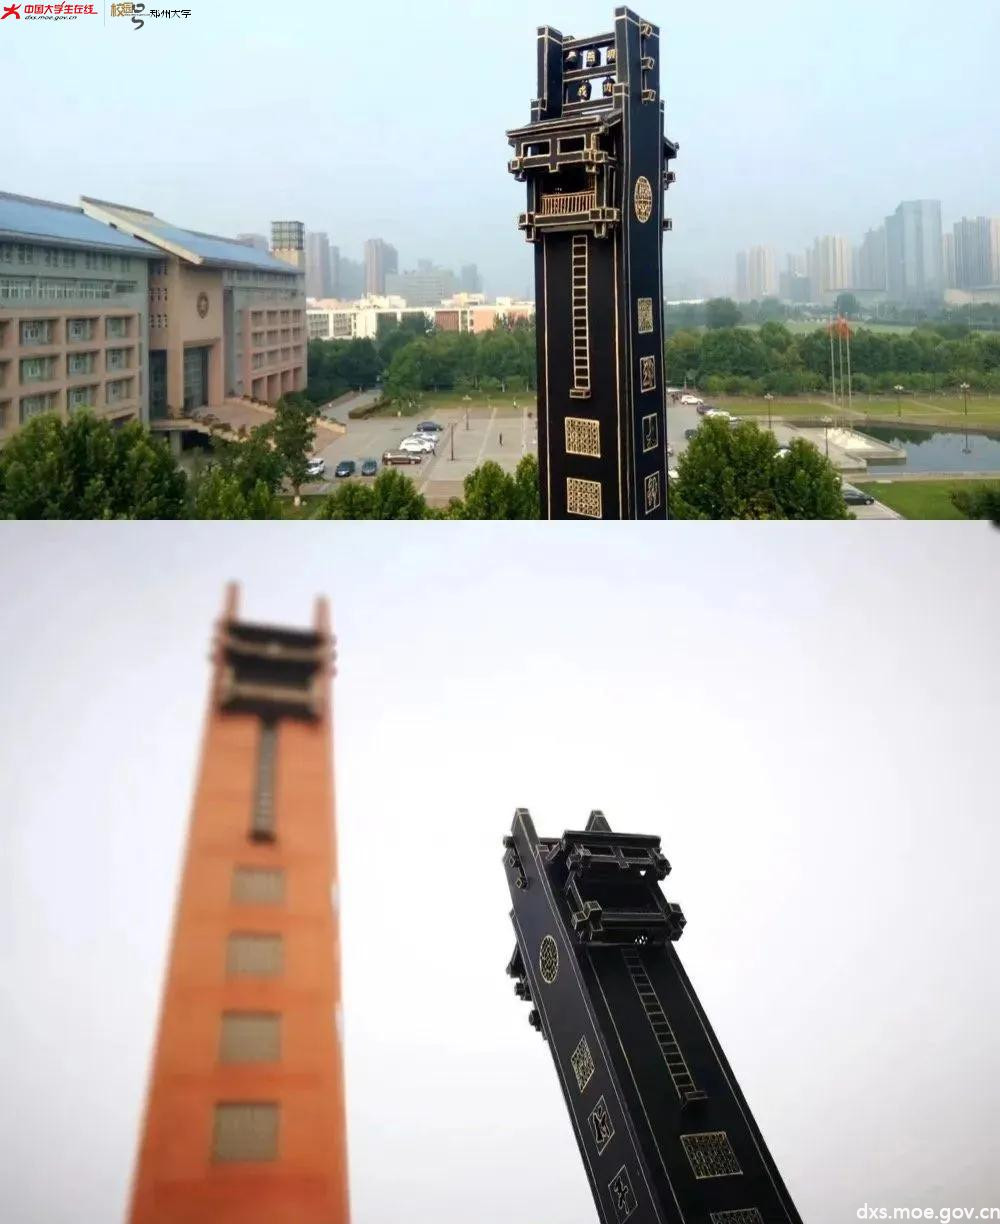 郑大毕业生历时三年打造纸雕校园 - 郑州大学